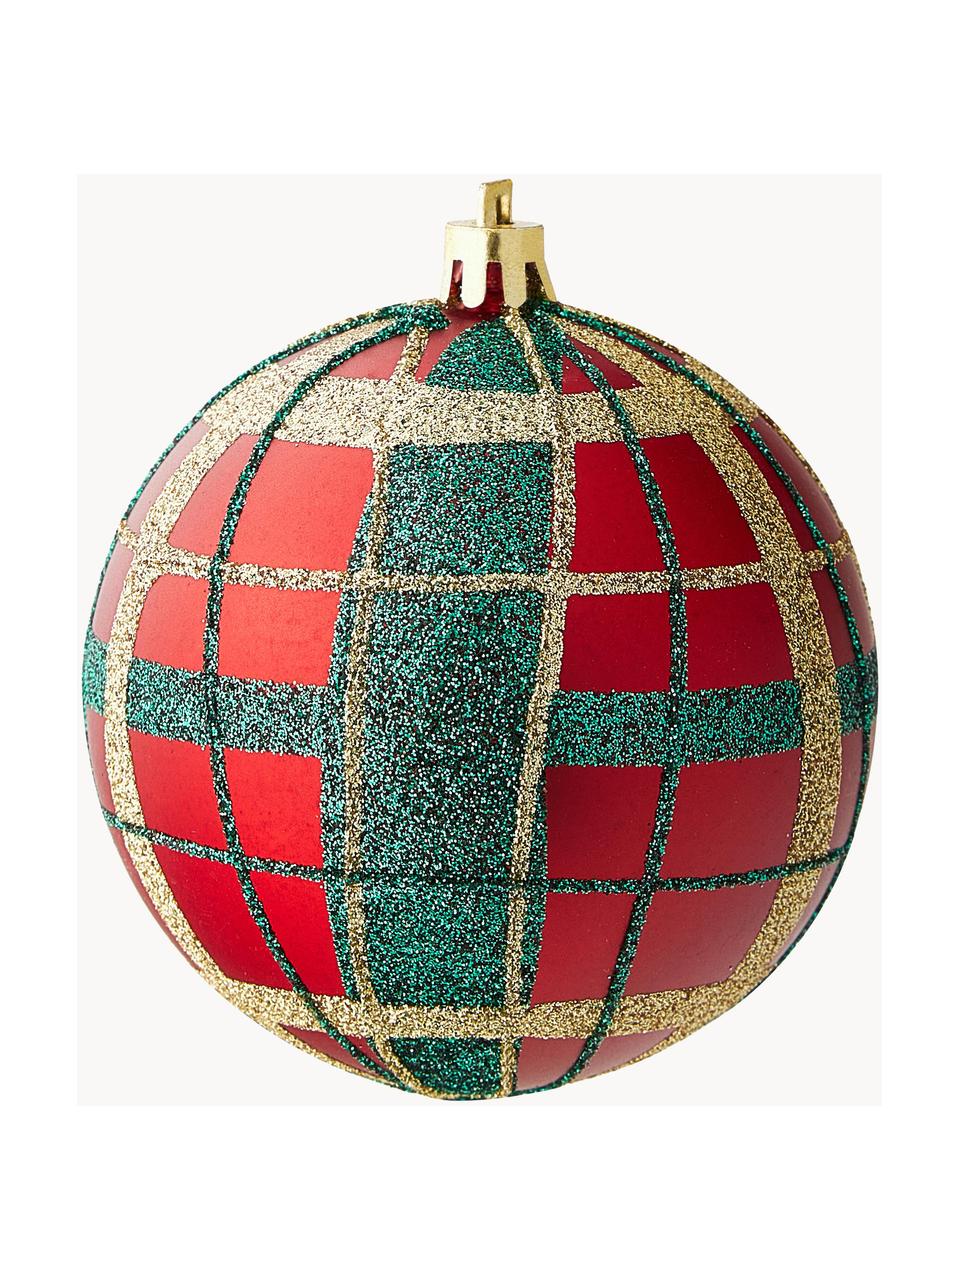 Sada nerozbitných vánočních ozdob Karo, 12 dílů, Umělá hmota, Červená, zelená, zlatá, Ø 8 cm